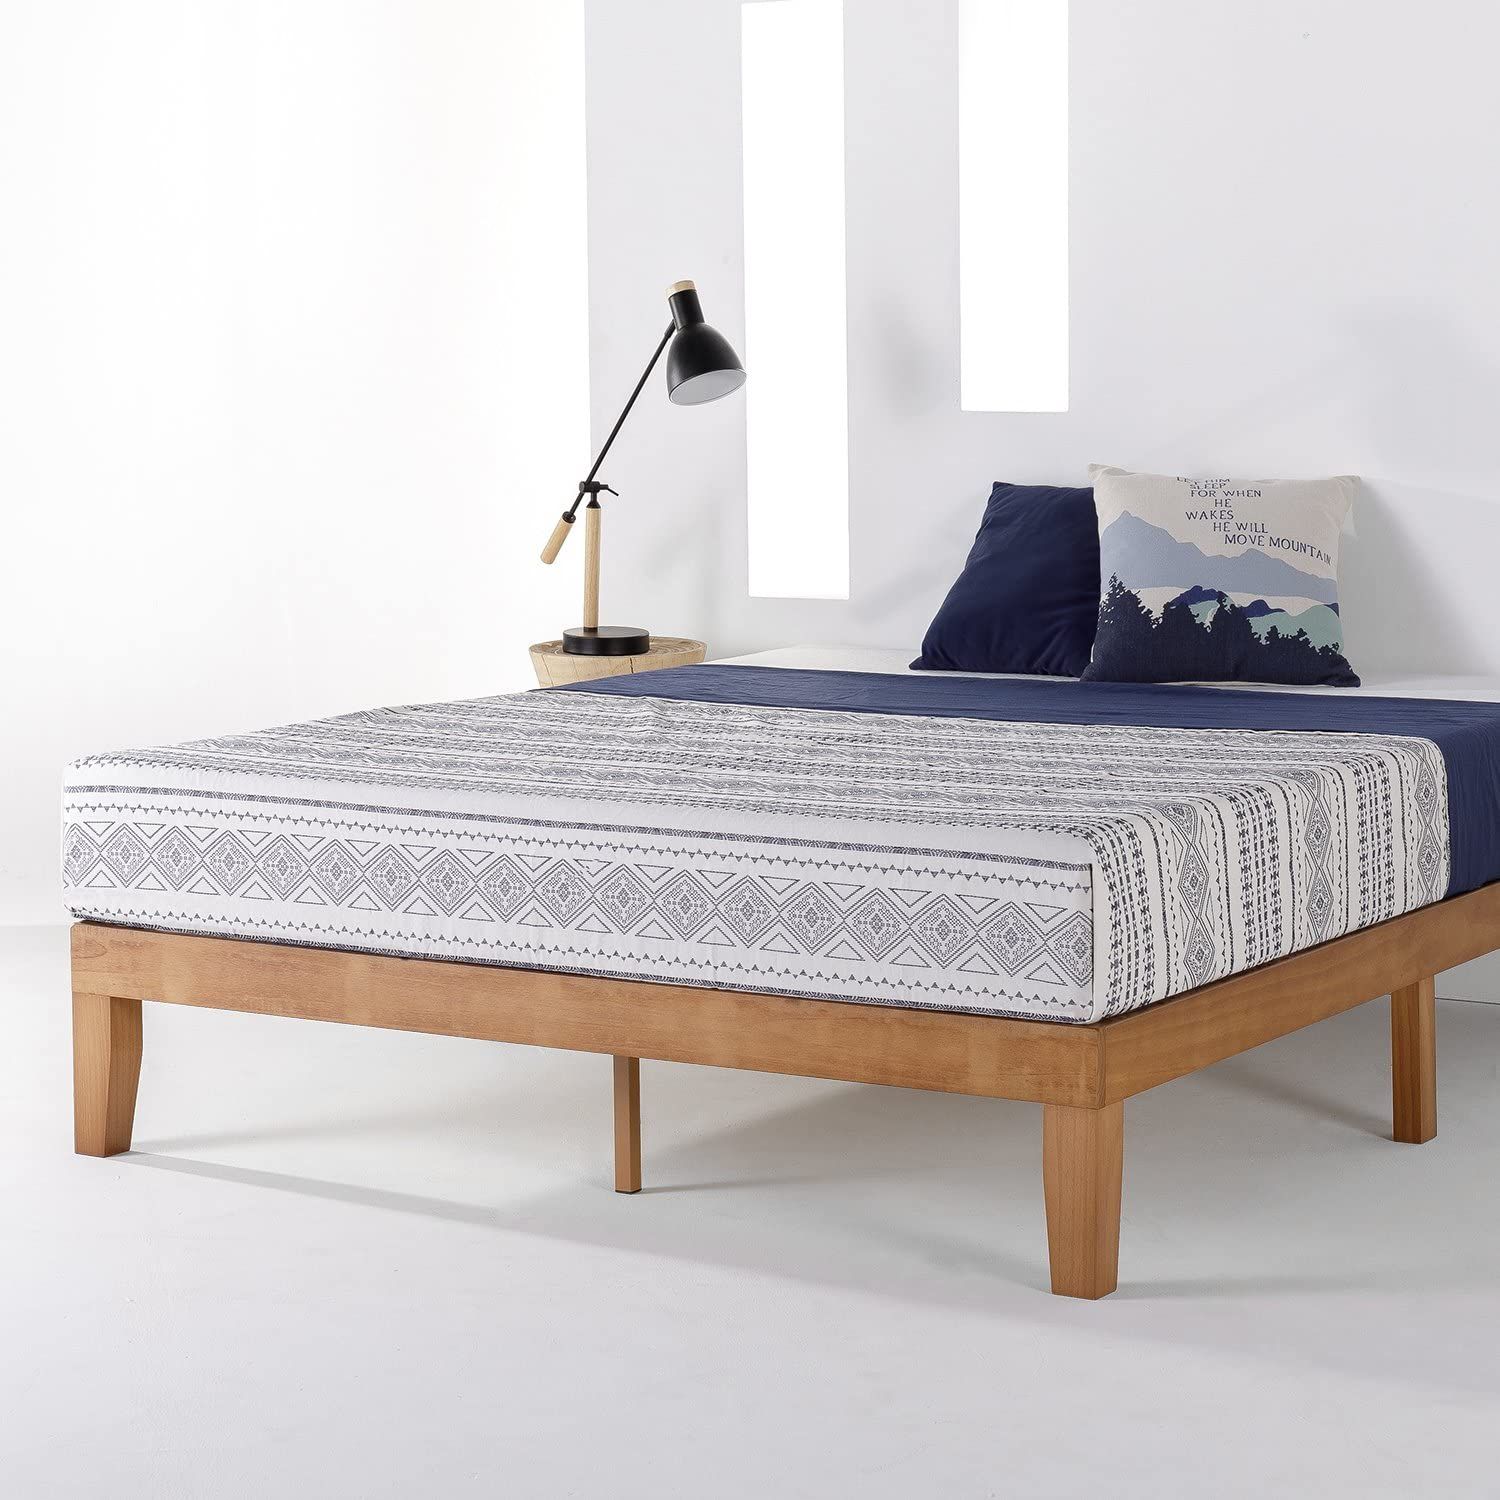 21 Best Platform Beds 2022 The Strategist, Real Wood Bed Frame Full